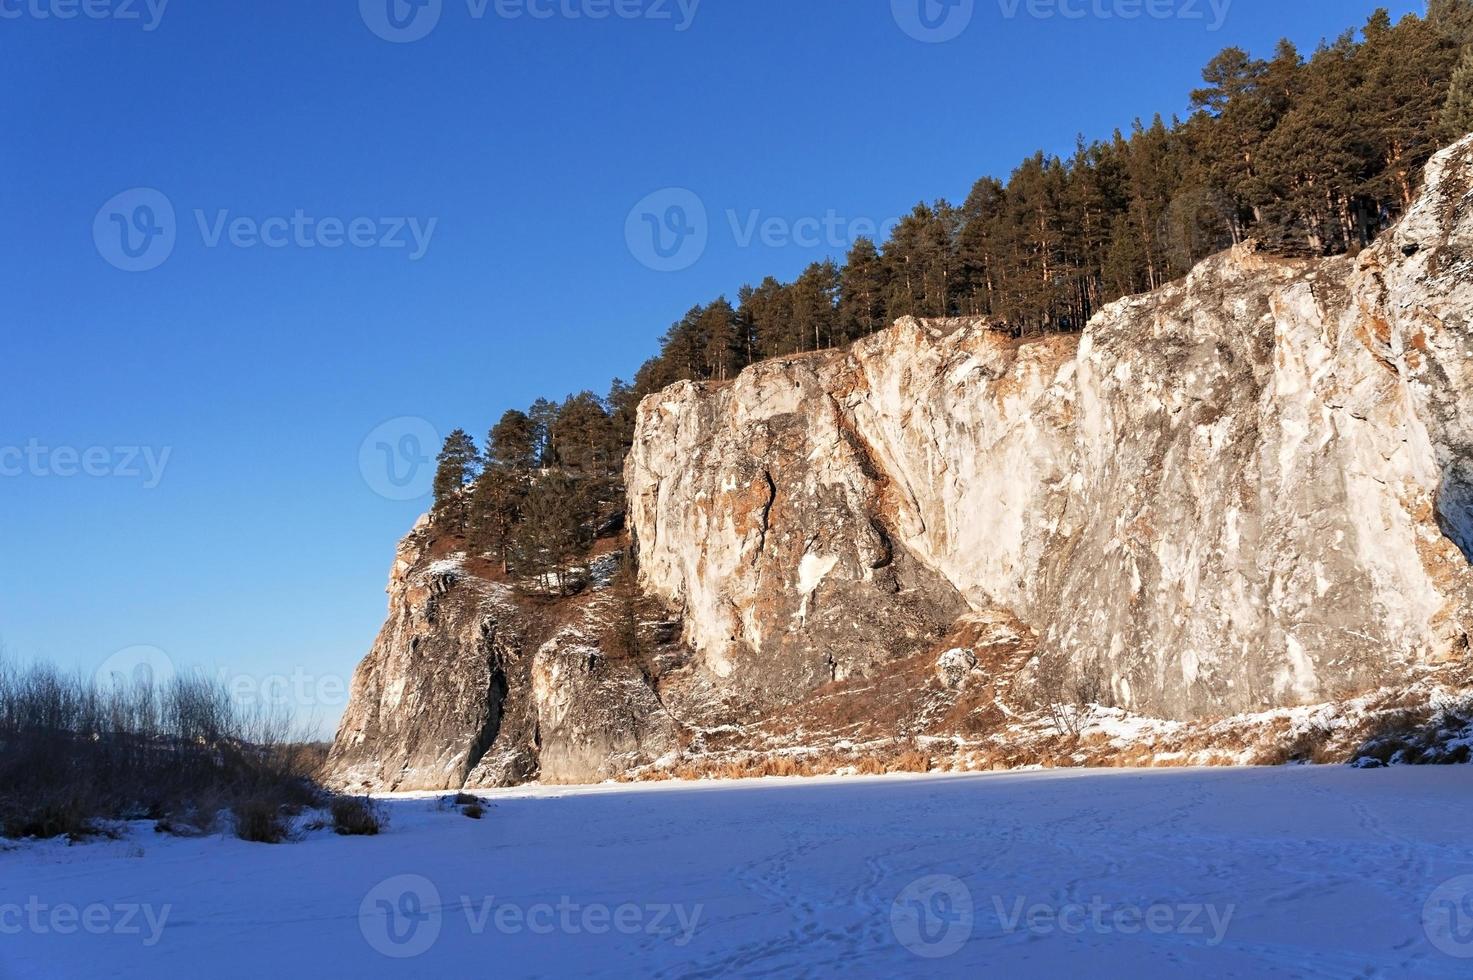 paisaje montañoso invernal con acantilados sobre un río helado y cubierto de nieve. rocas con pinos, naturaleza escénica foto